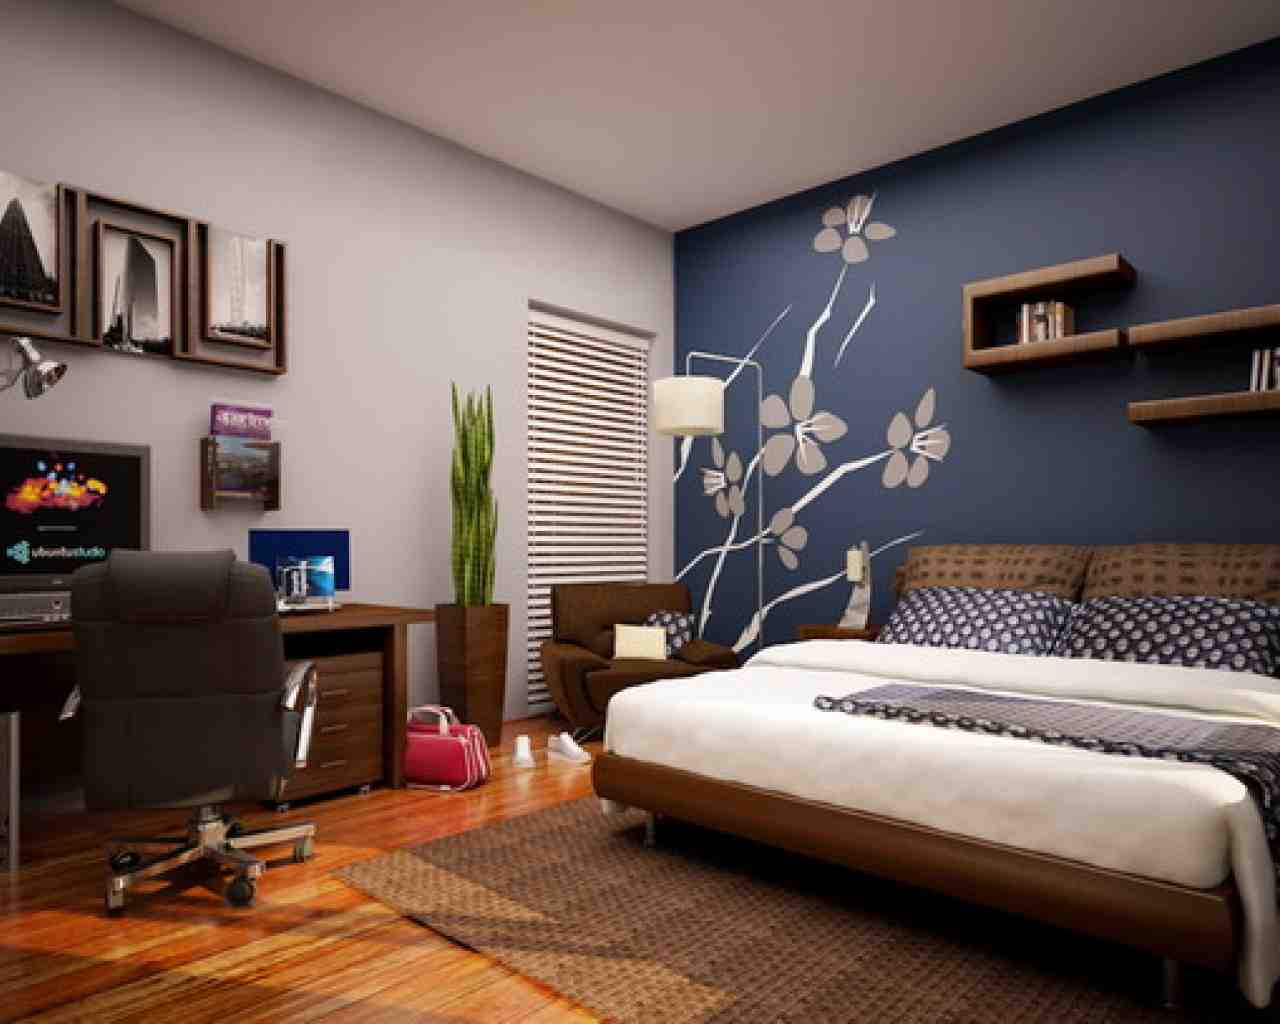 Decorating Bedroom Walls Paint